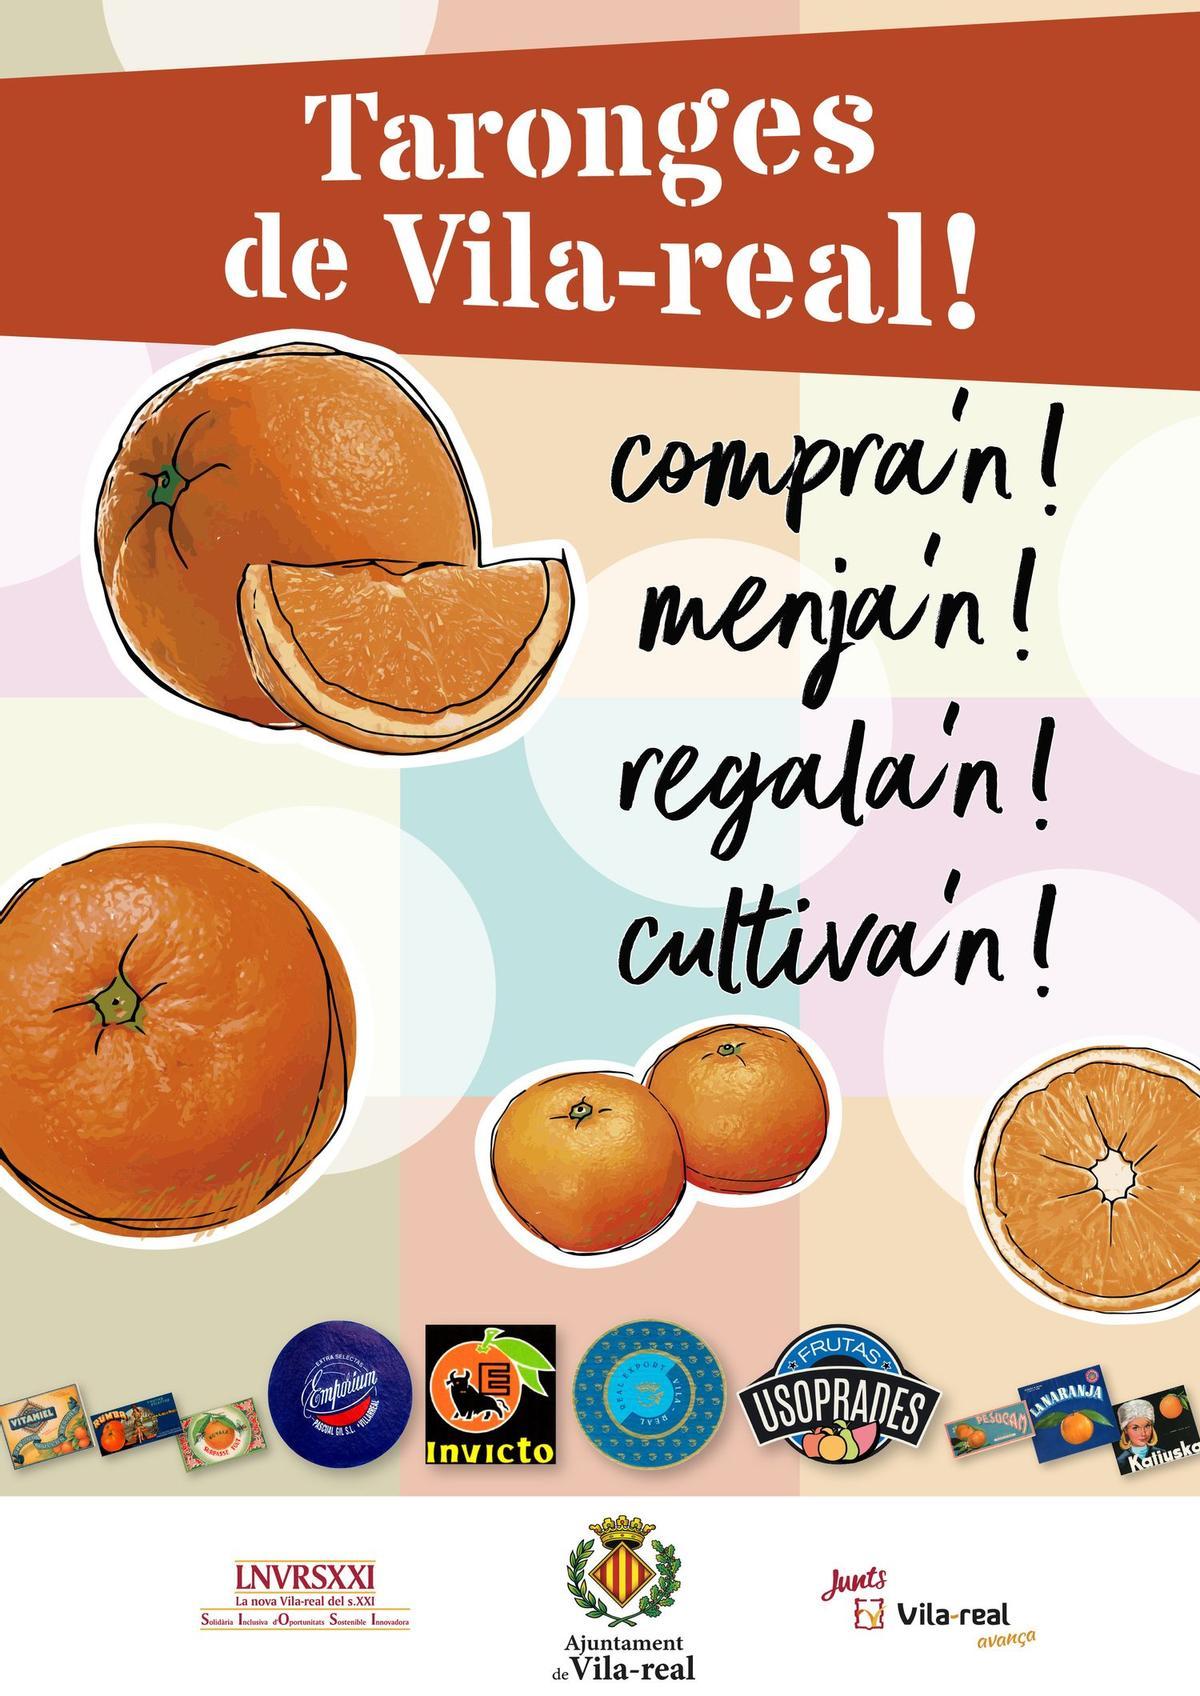 Cartel edeado para promocionar el consumo de mandarinas y naranjas vila-realenses.